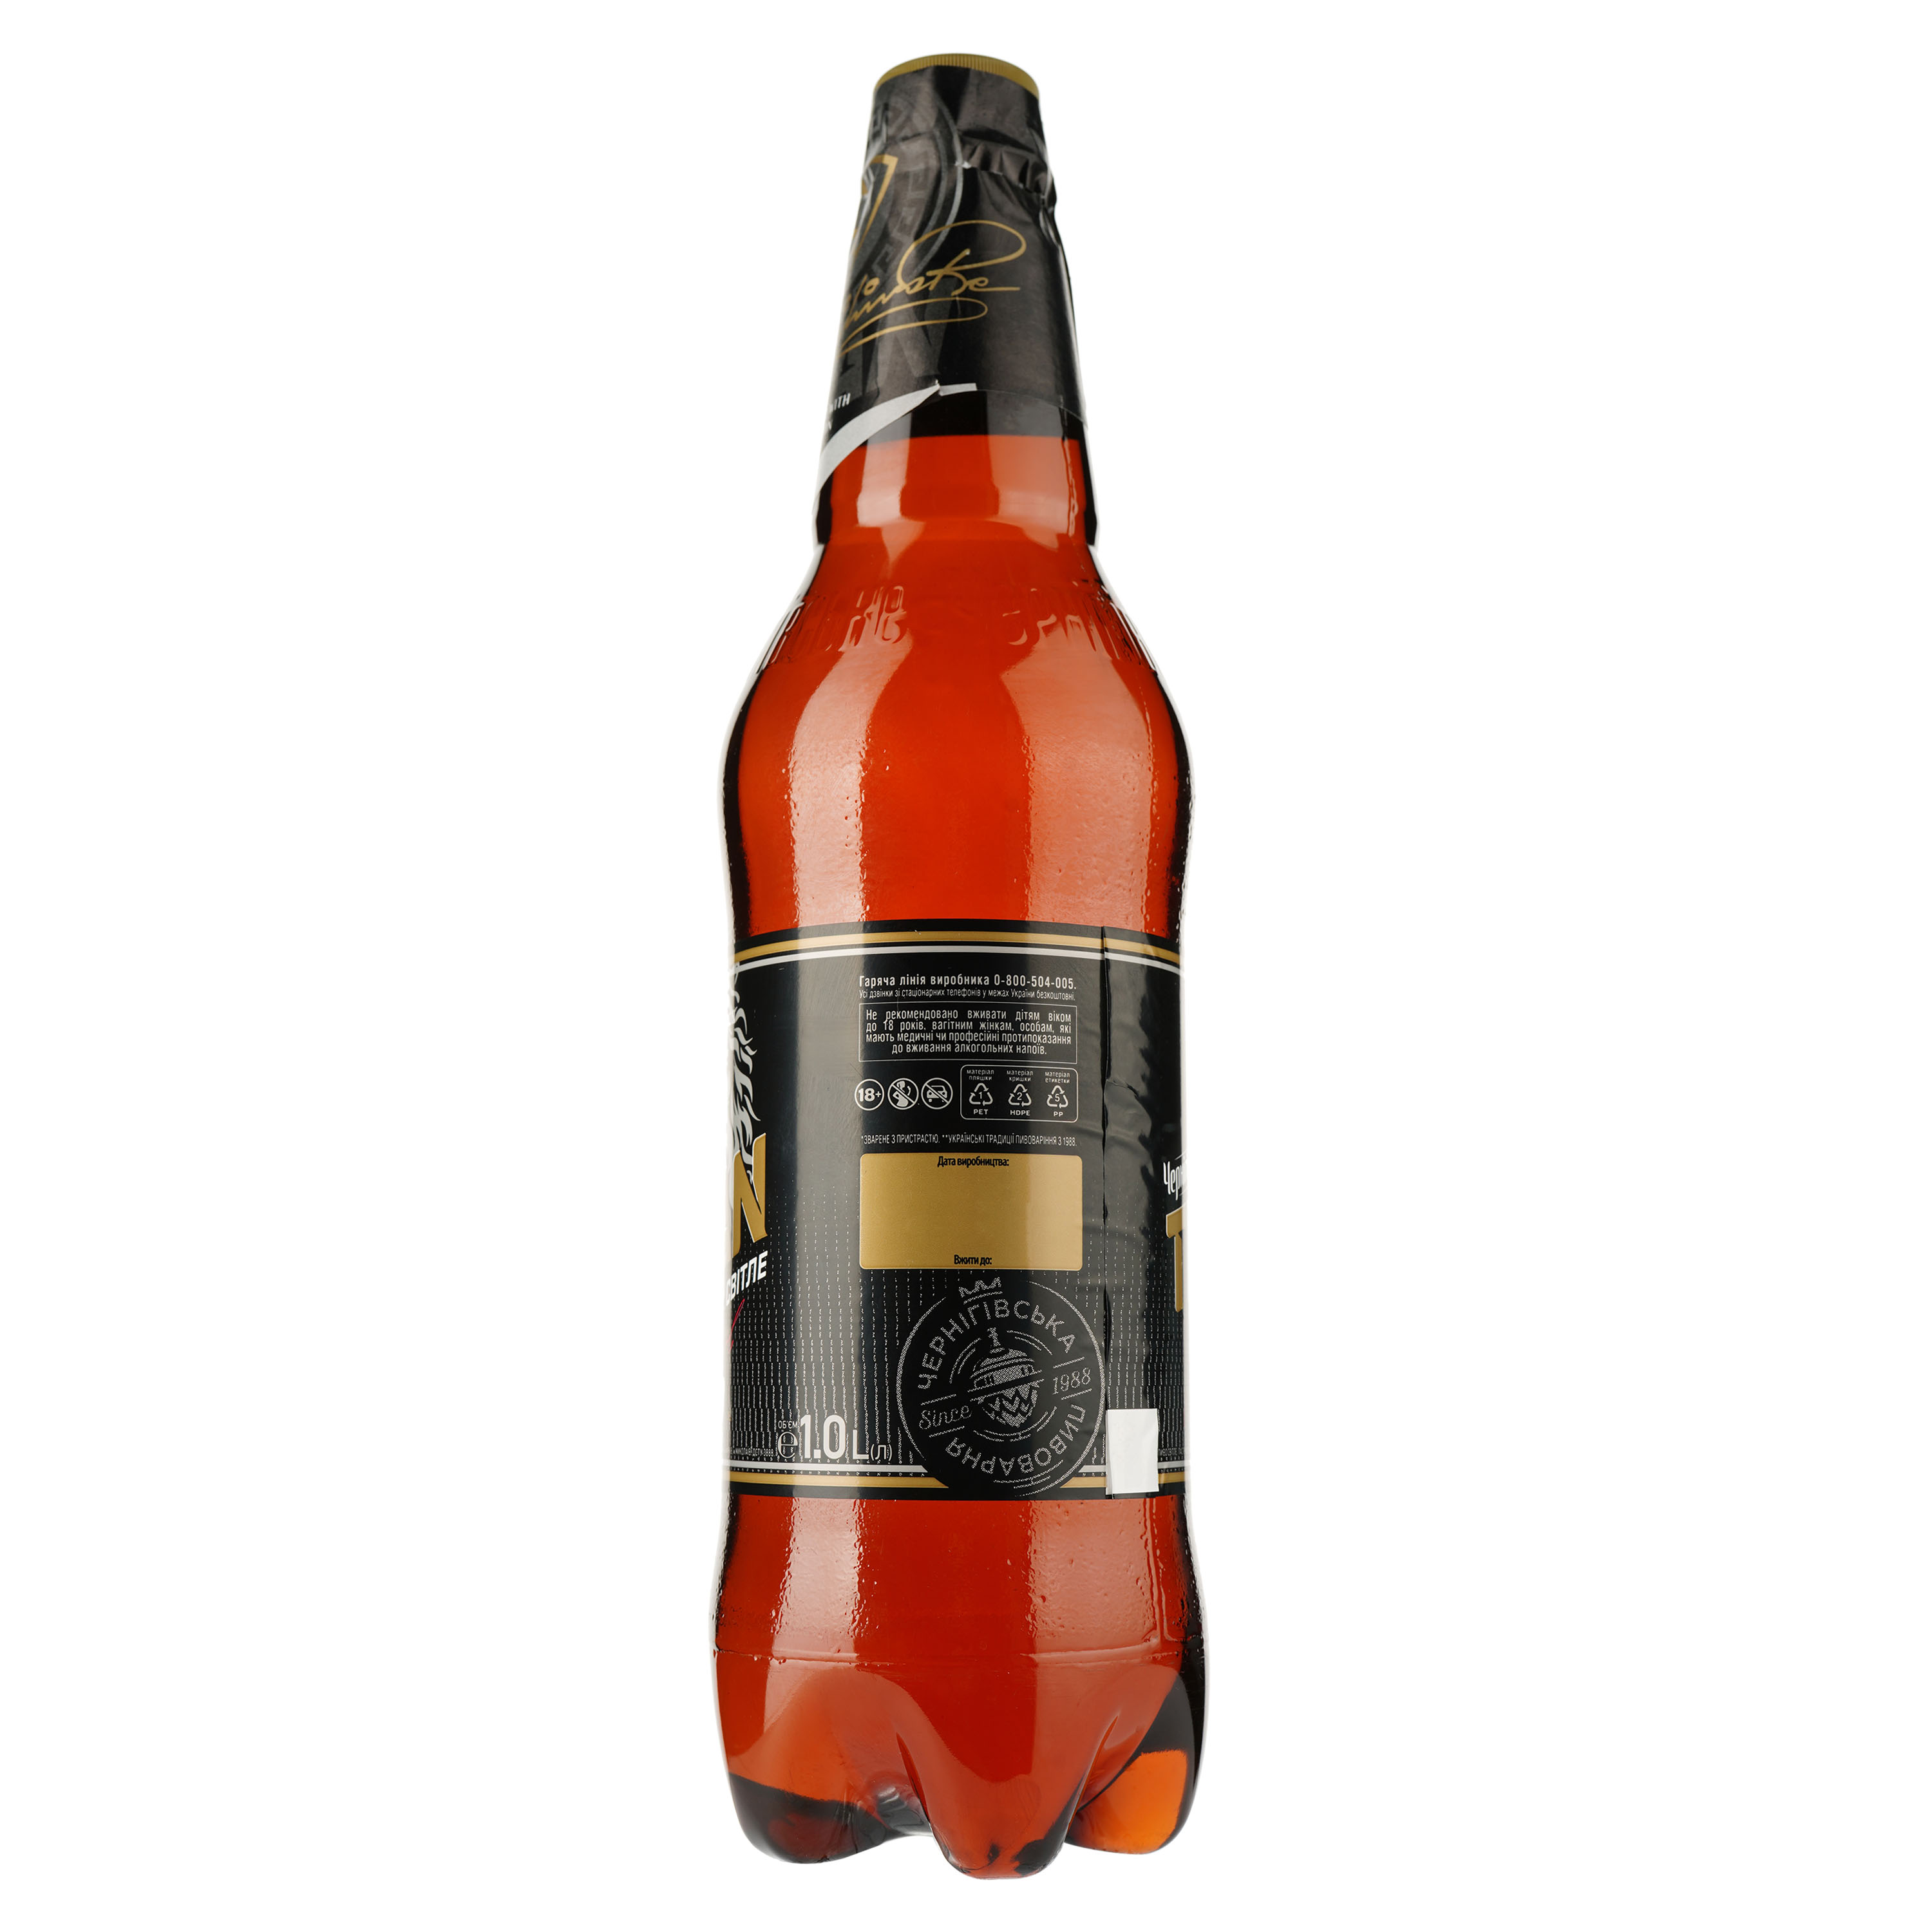 Пиво Чернігівське Titan, светлое, 8%, 1 л - фото 2